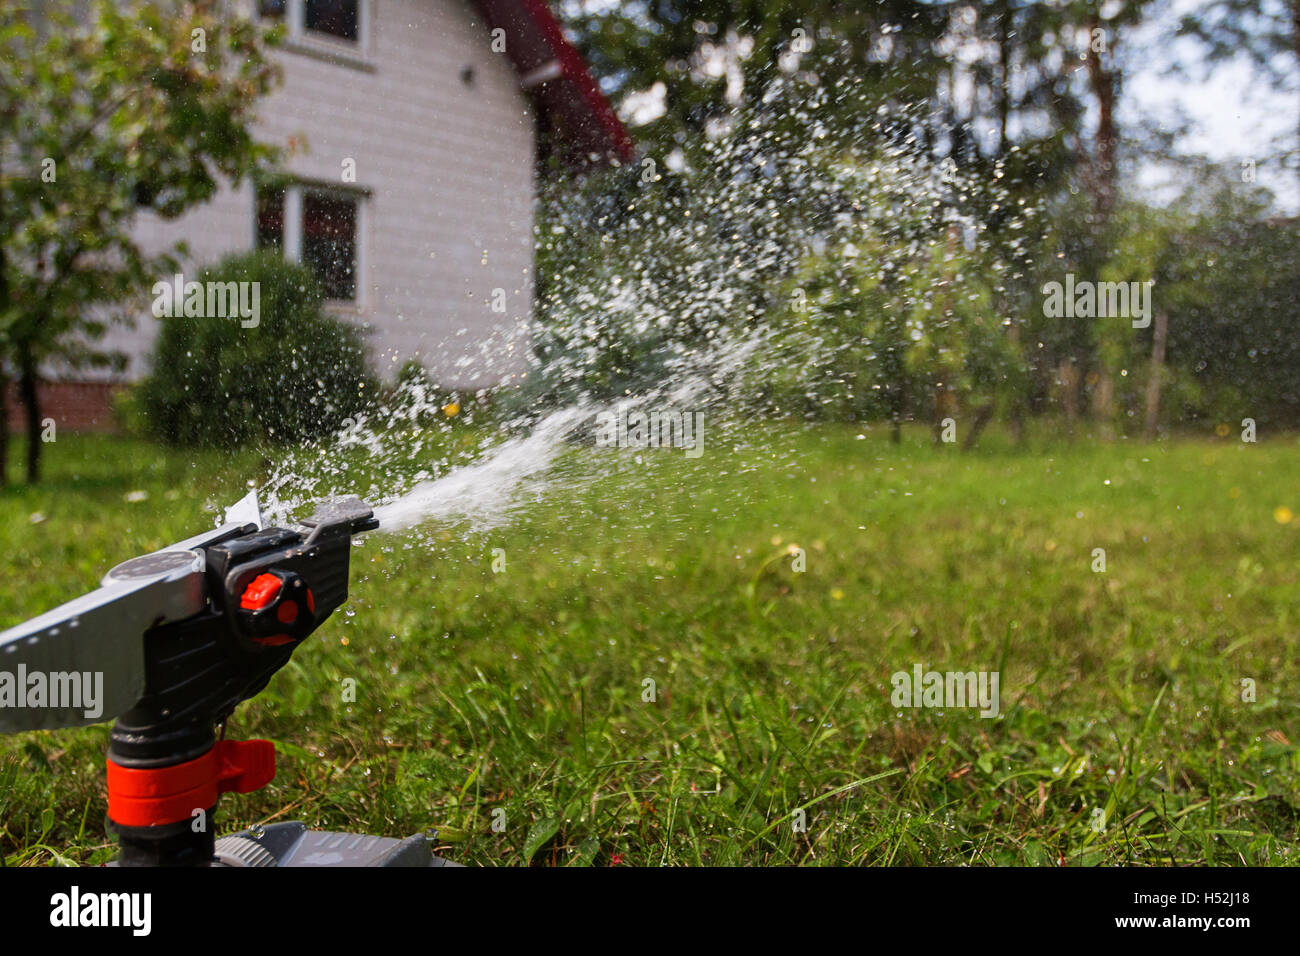 Gocce d'acqua dagli sprinkler Foto Stock